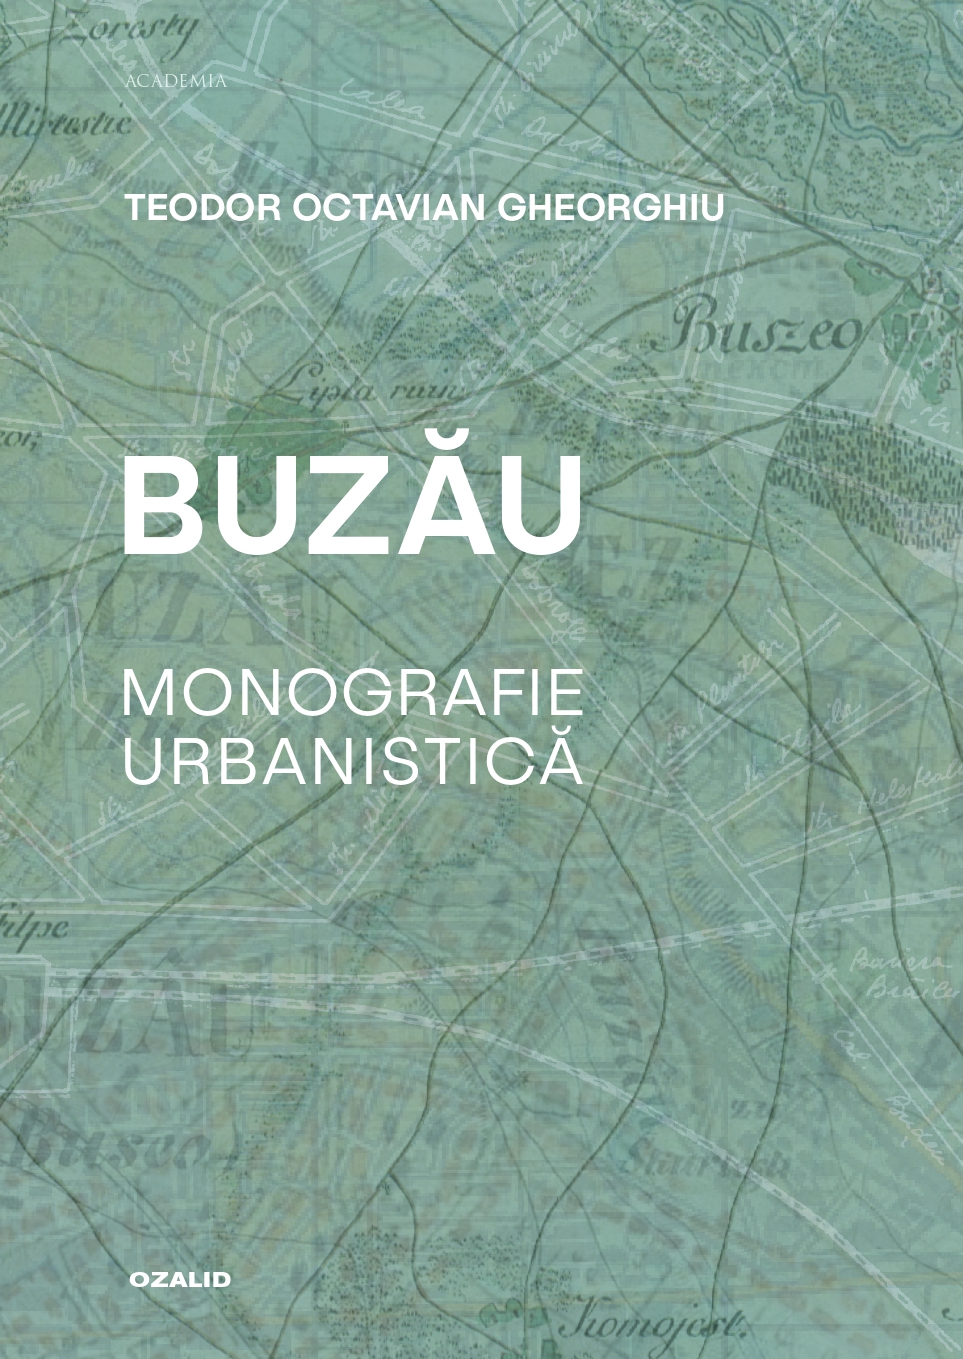 Buzau. Monografie urbanistica